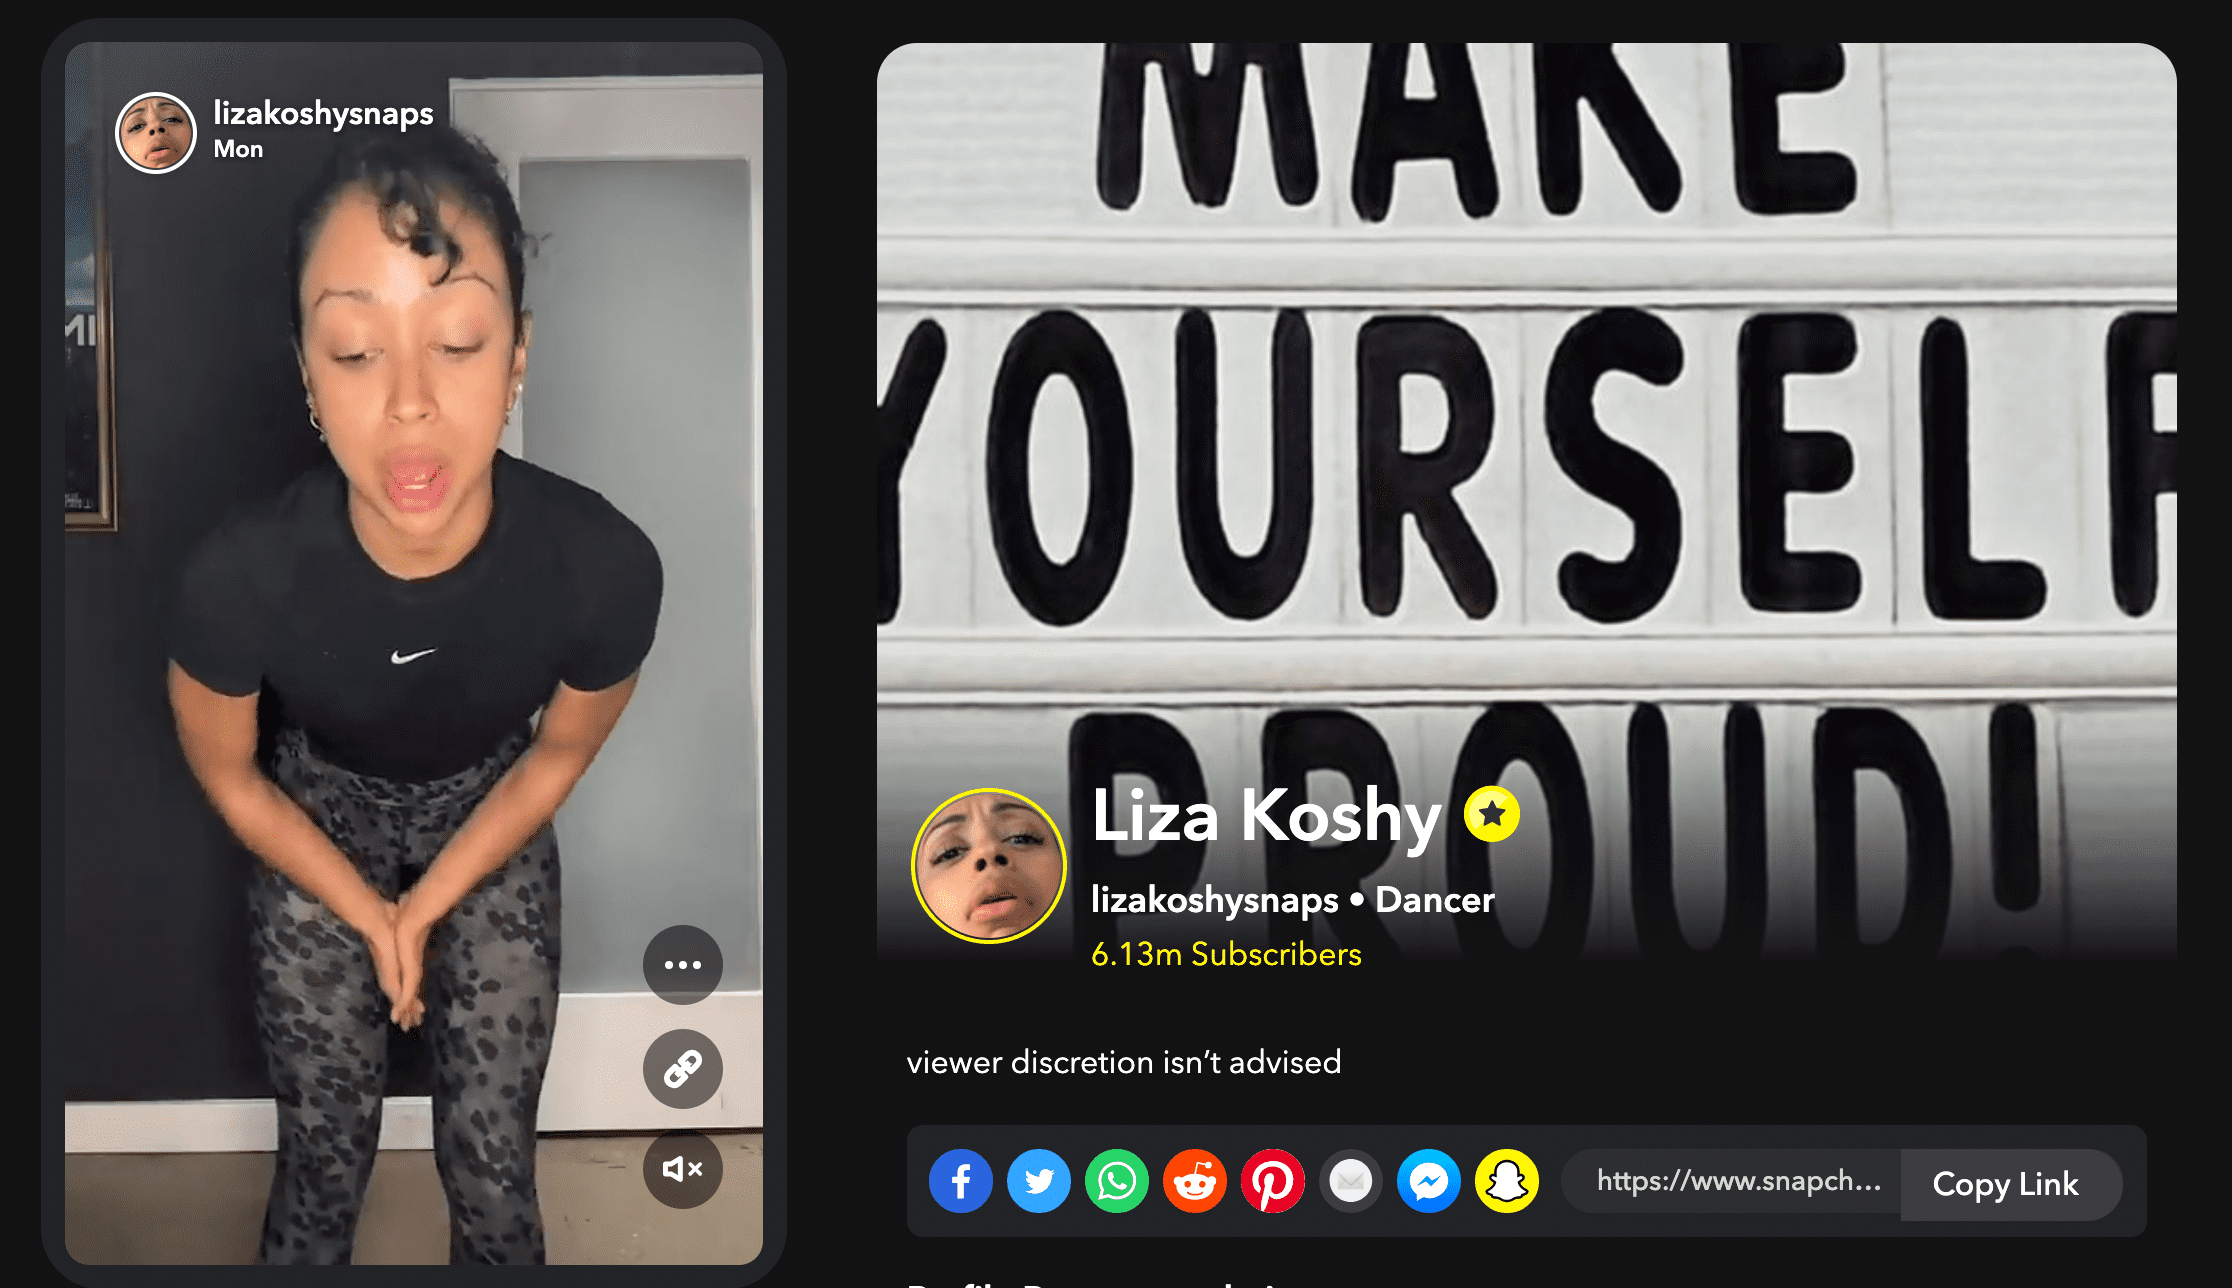 Liza Koshy Snapchat influencer